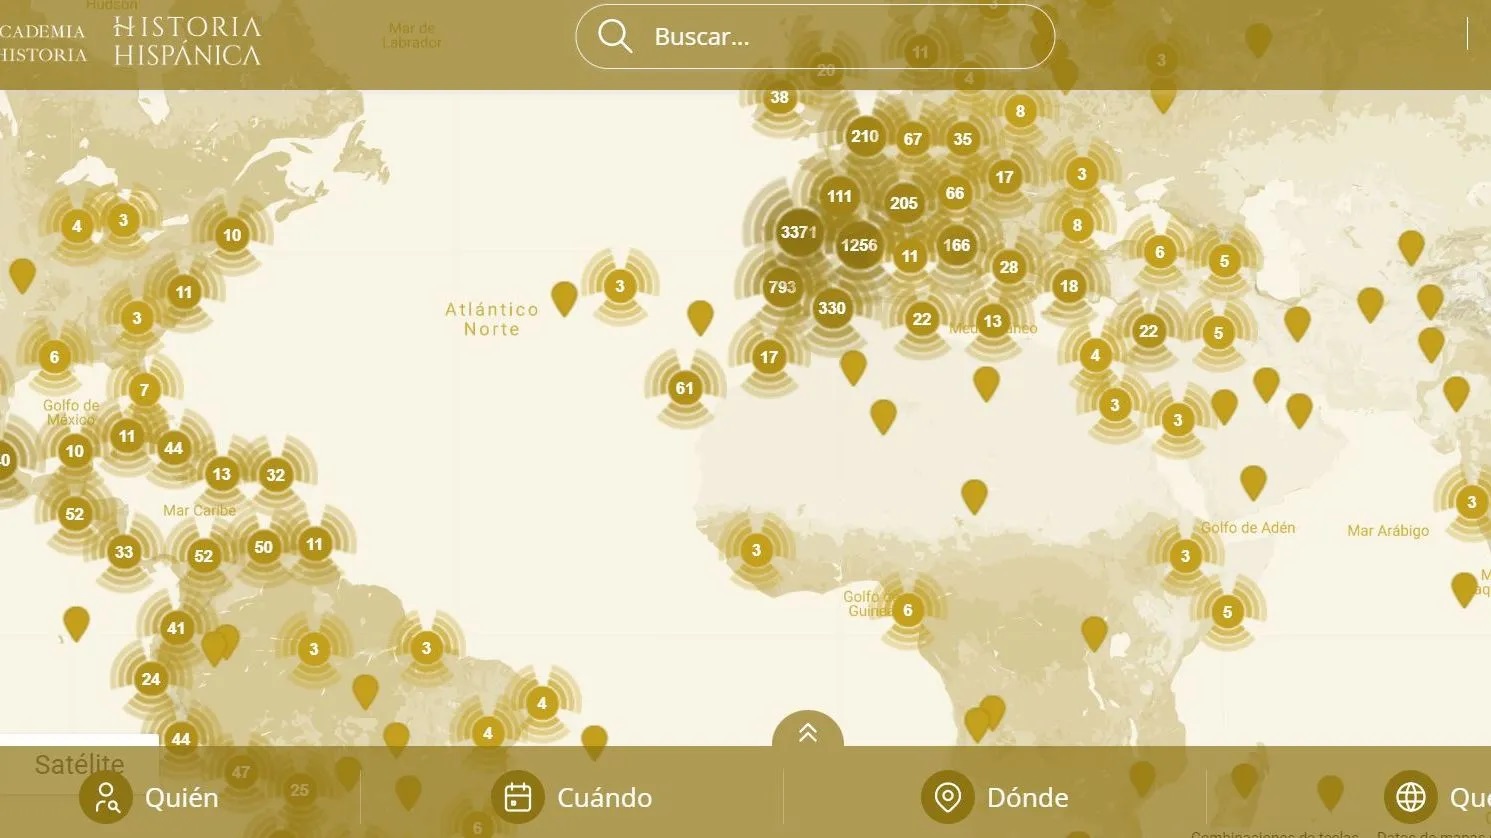 El mapa histórico interactivo que ha puesto en marcha la Real Academia de la Historia de España.